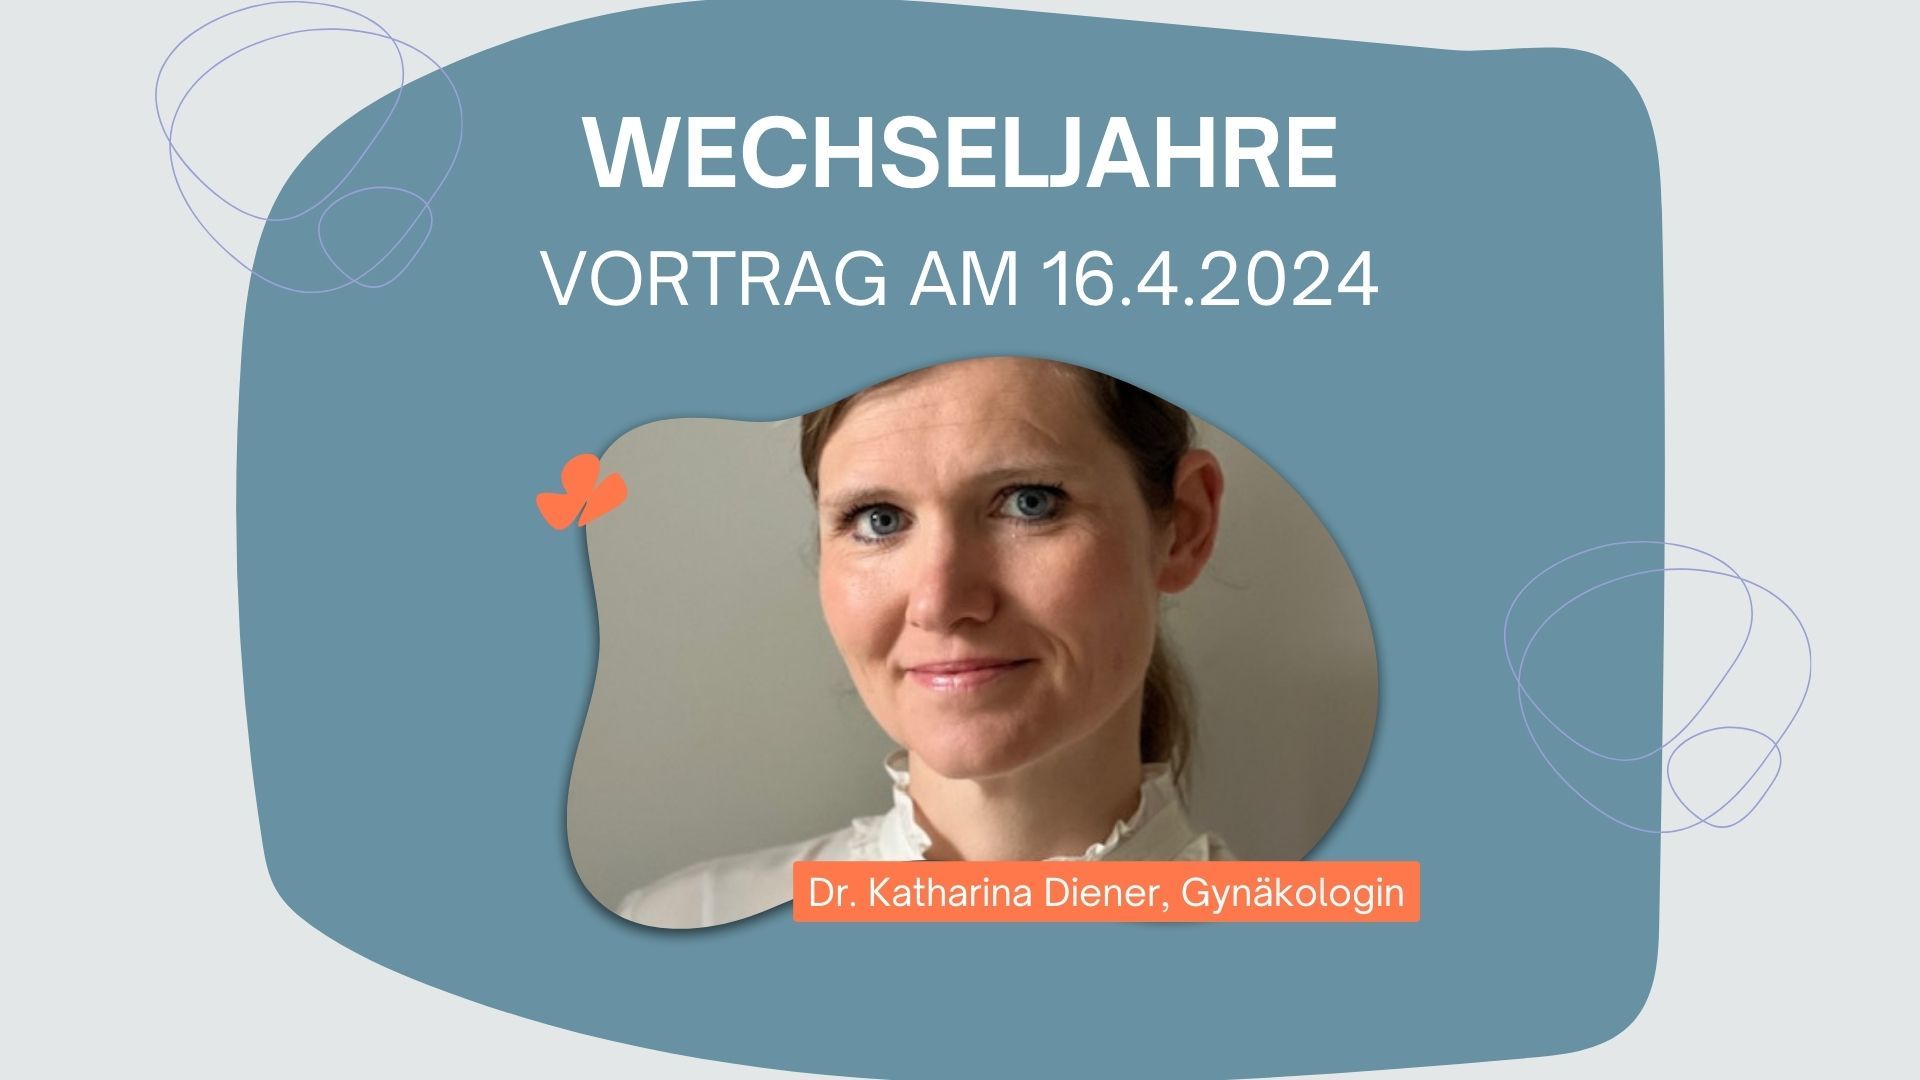 Vortrag „Wechseljahre“ mit Gynäkologin Dr. Katharina Diener am 16.4.2024